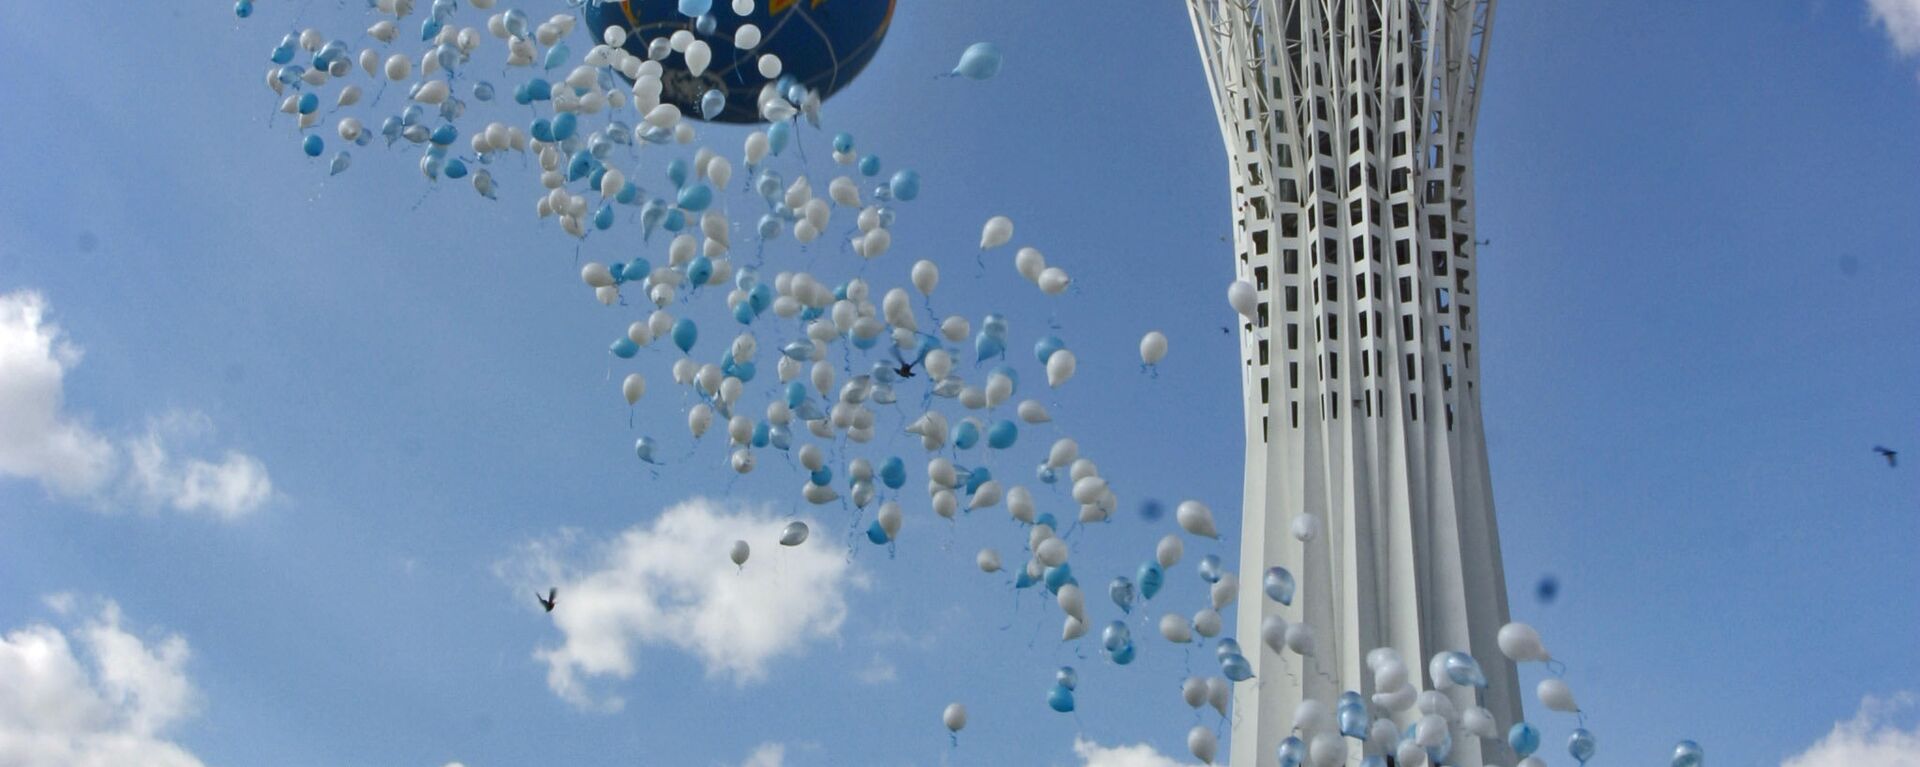 Воздушные шары у монумента Байтерек, архивное фото - Sputnik Казахстан, 1920, 05.03.2021